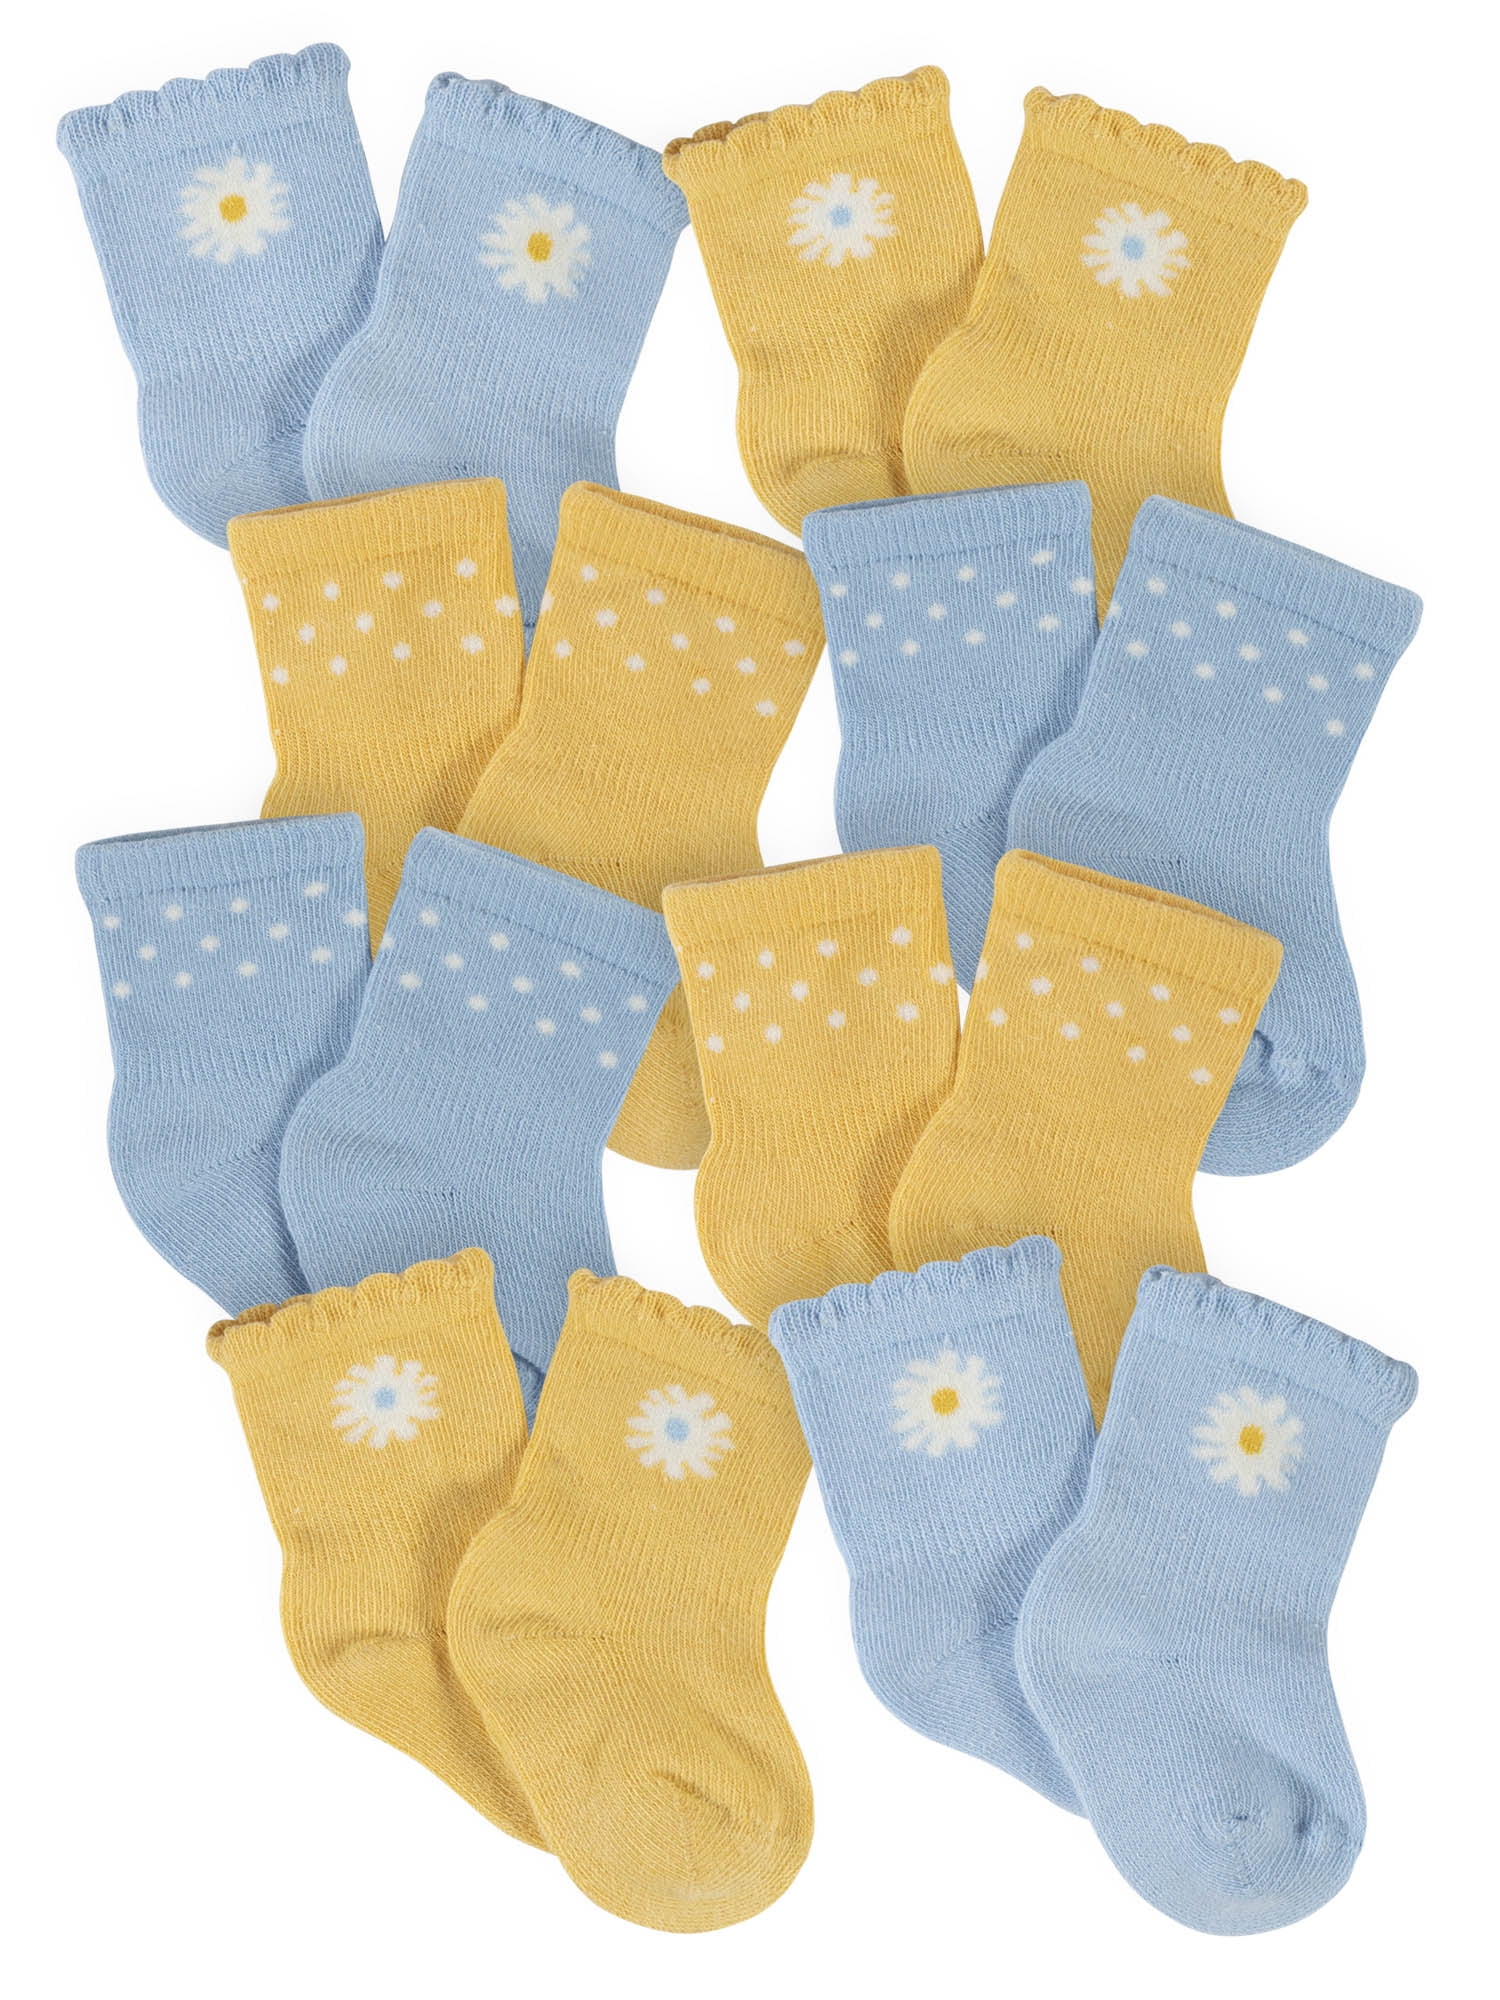 John Deere infant socks boys & girl sets 0-6 6-12 12-24 ms 